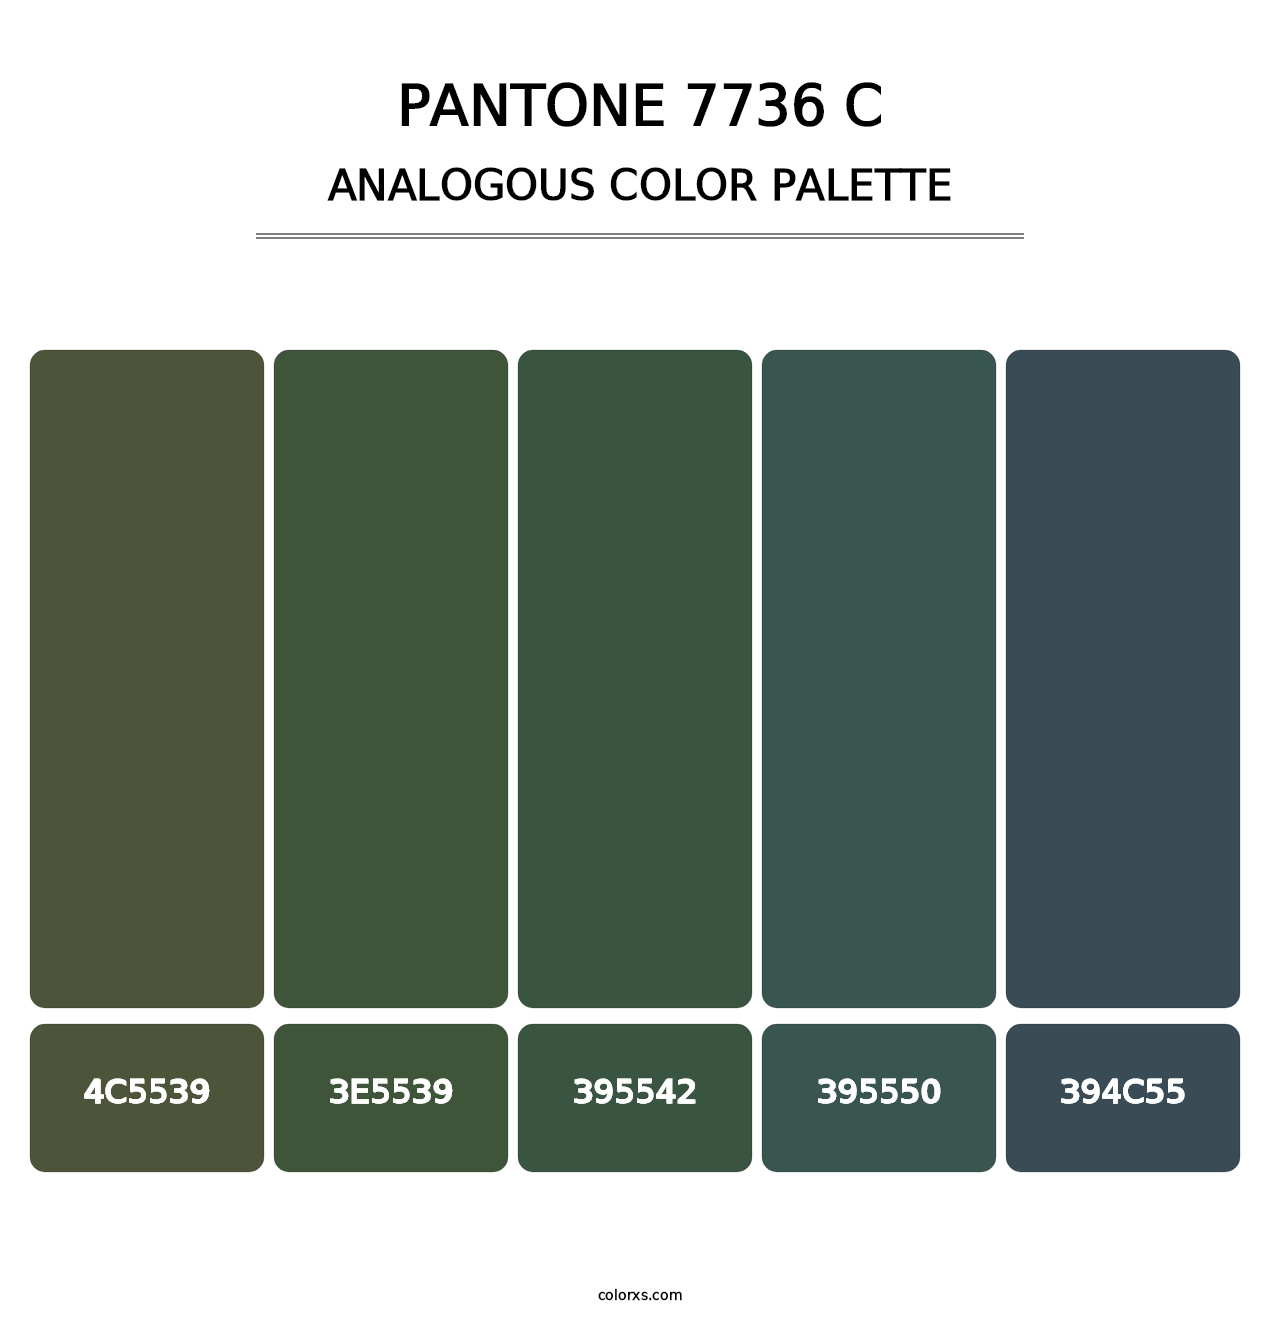 PANTONE 7736 C - Analogous Color Palette